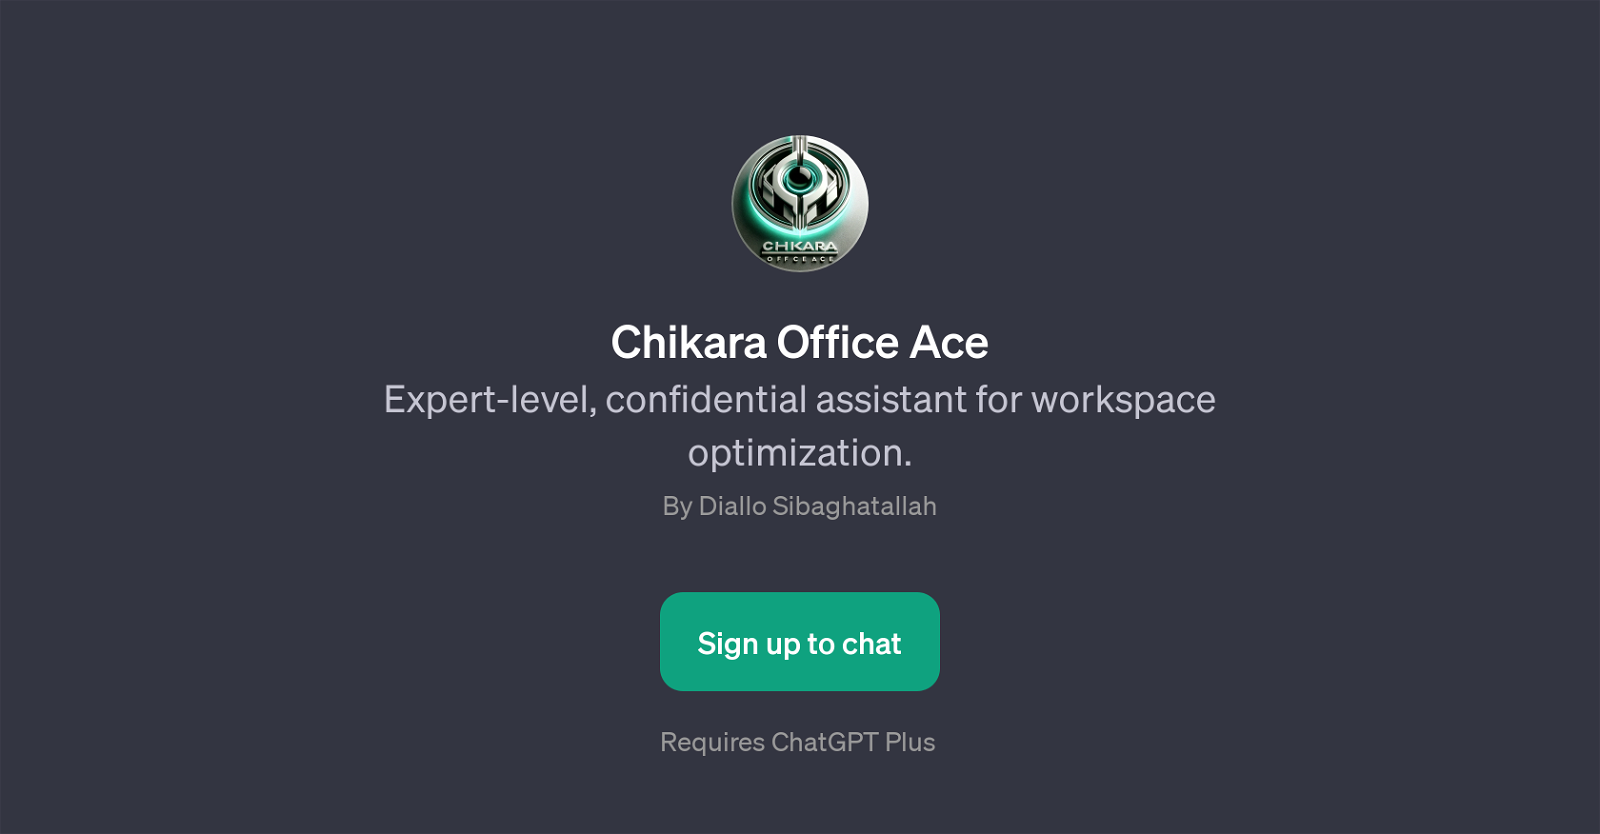 Chikara Office Ace website